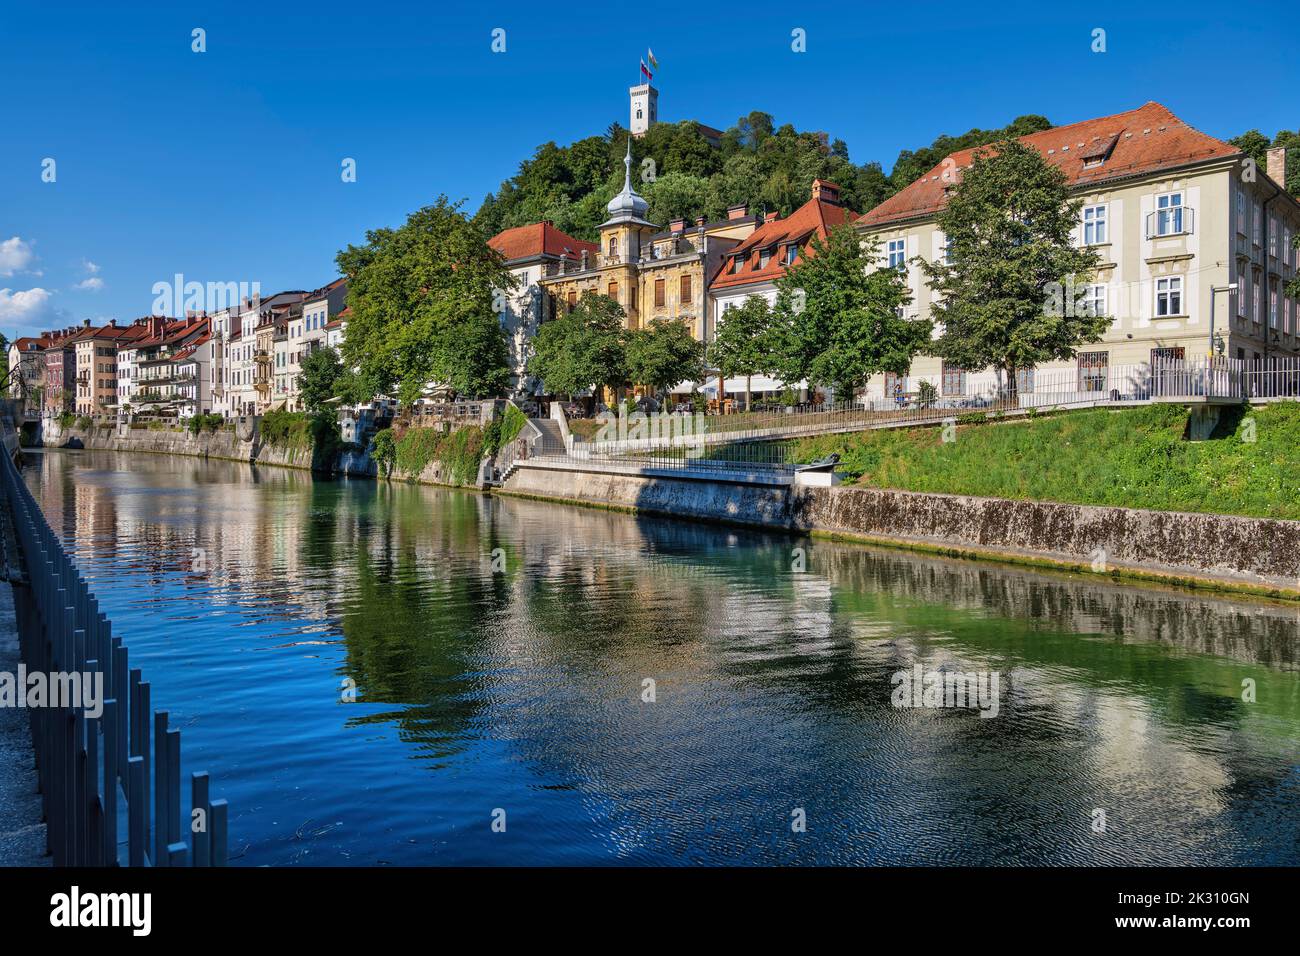 Slovenia, Ljubljana, Old town buildings standing along Ljubljanica river Stock Photo